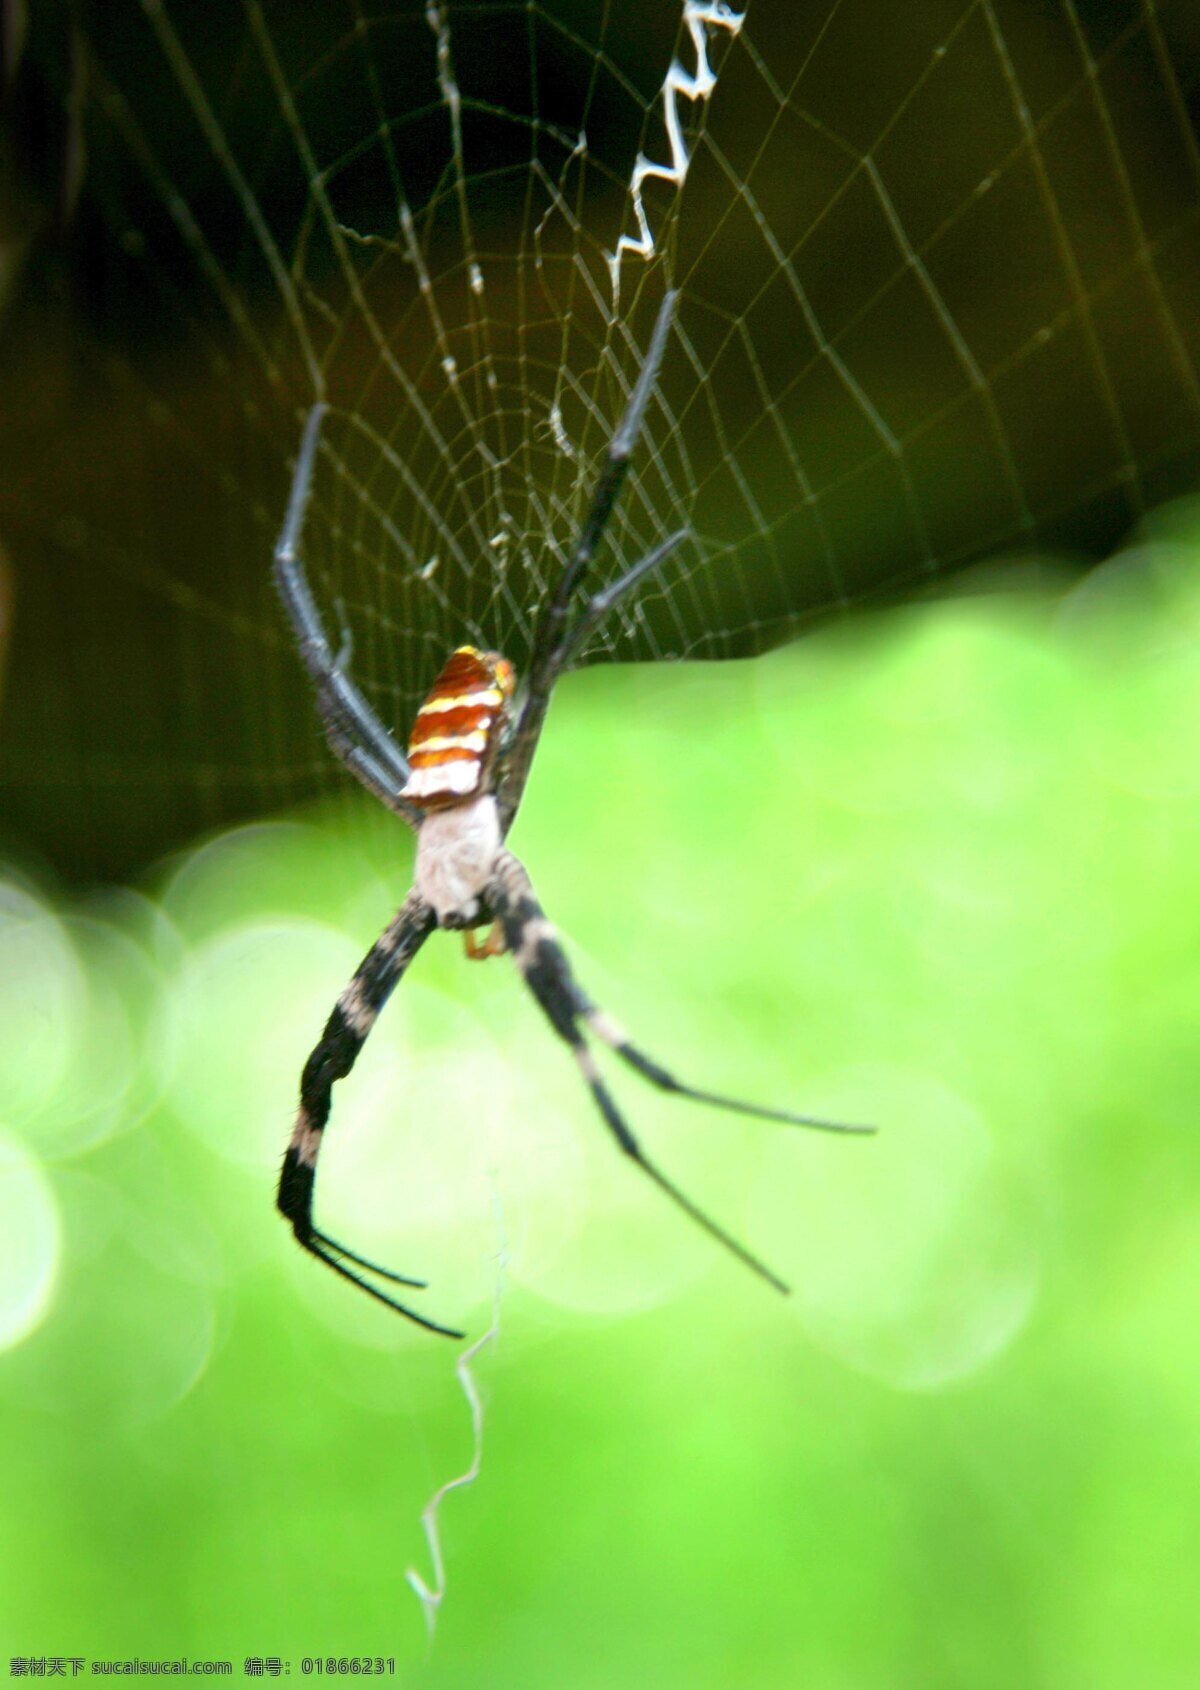 迷雾 深处 网 昆虫 生物世界 蜘蛛 迷雾深处的网